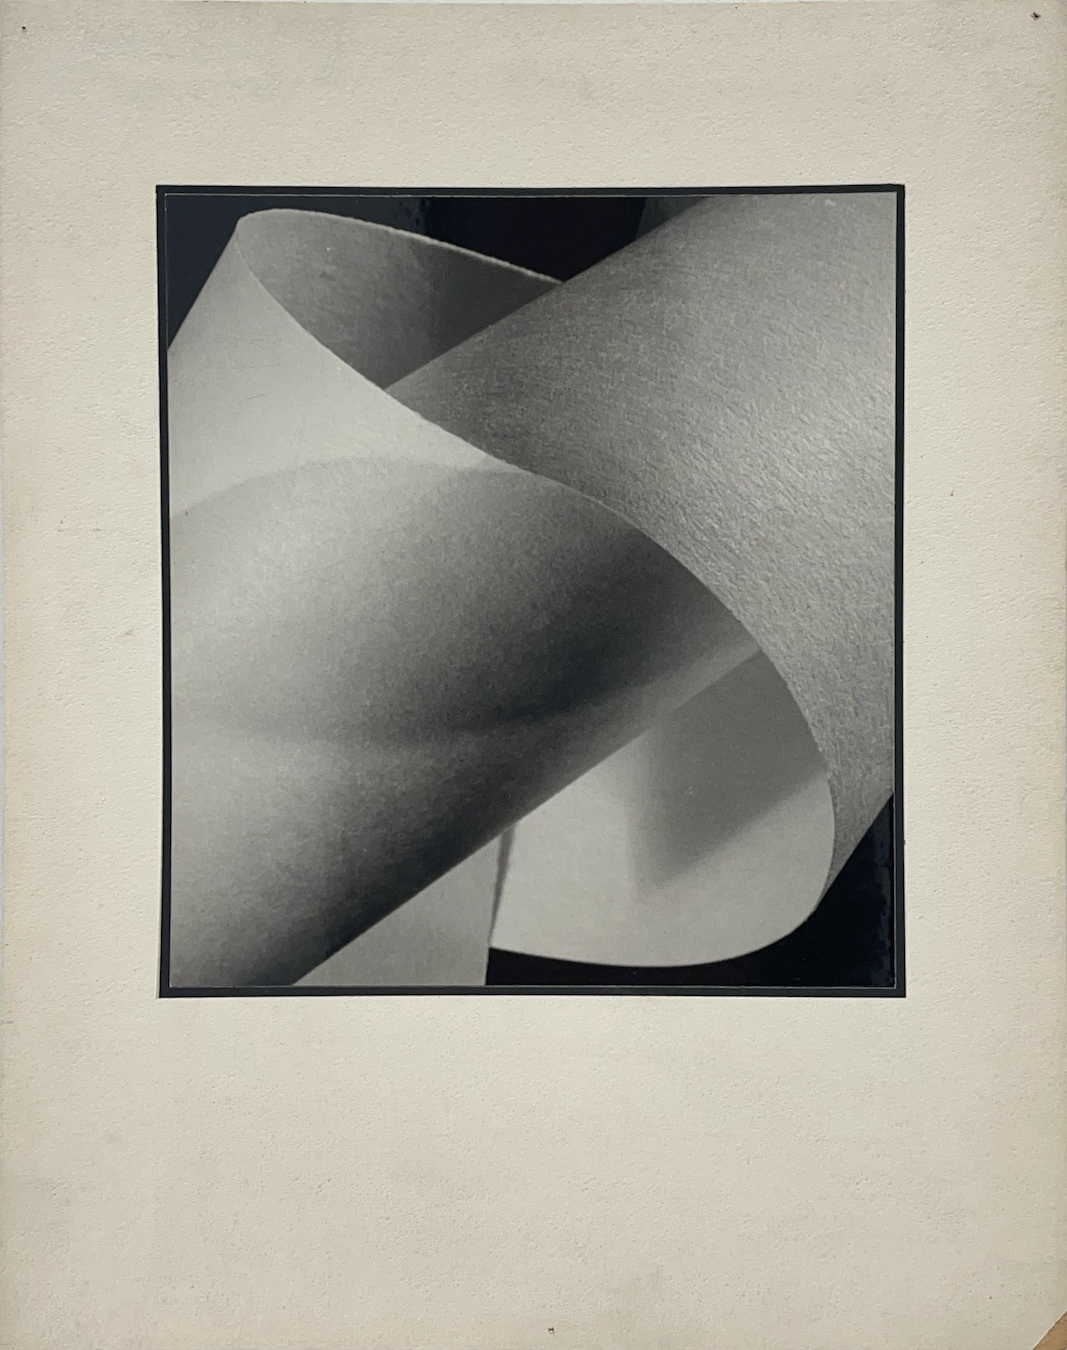 Yuichi Idaka, Untitled 1942-1947, gelatin silver print, 9 1/2 x 8 9/16 inches